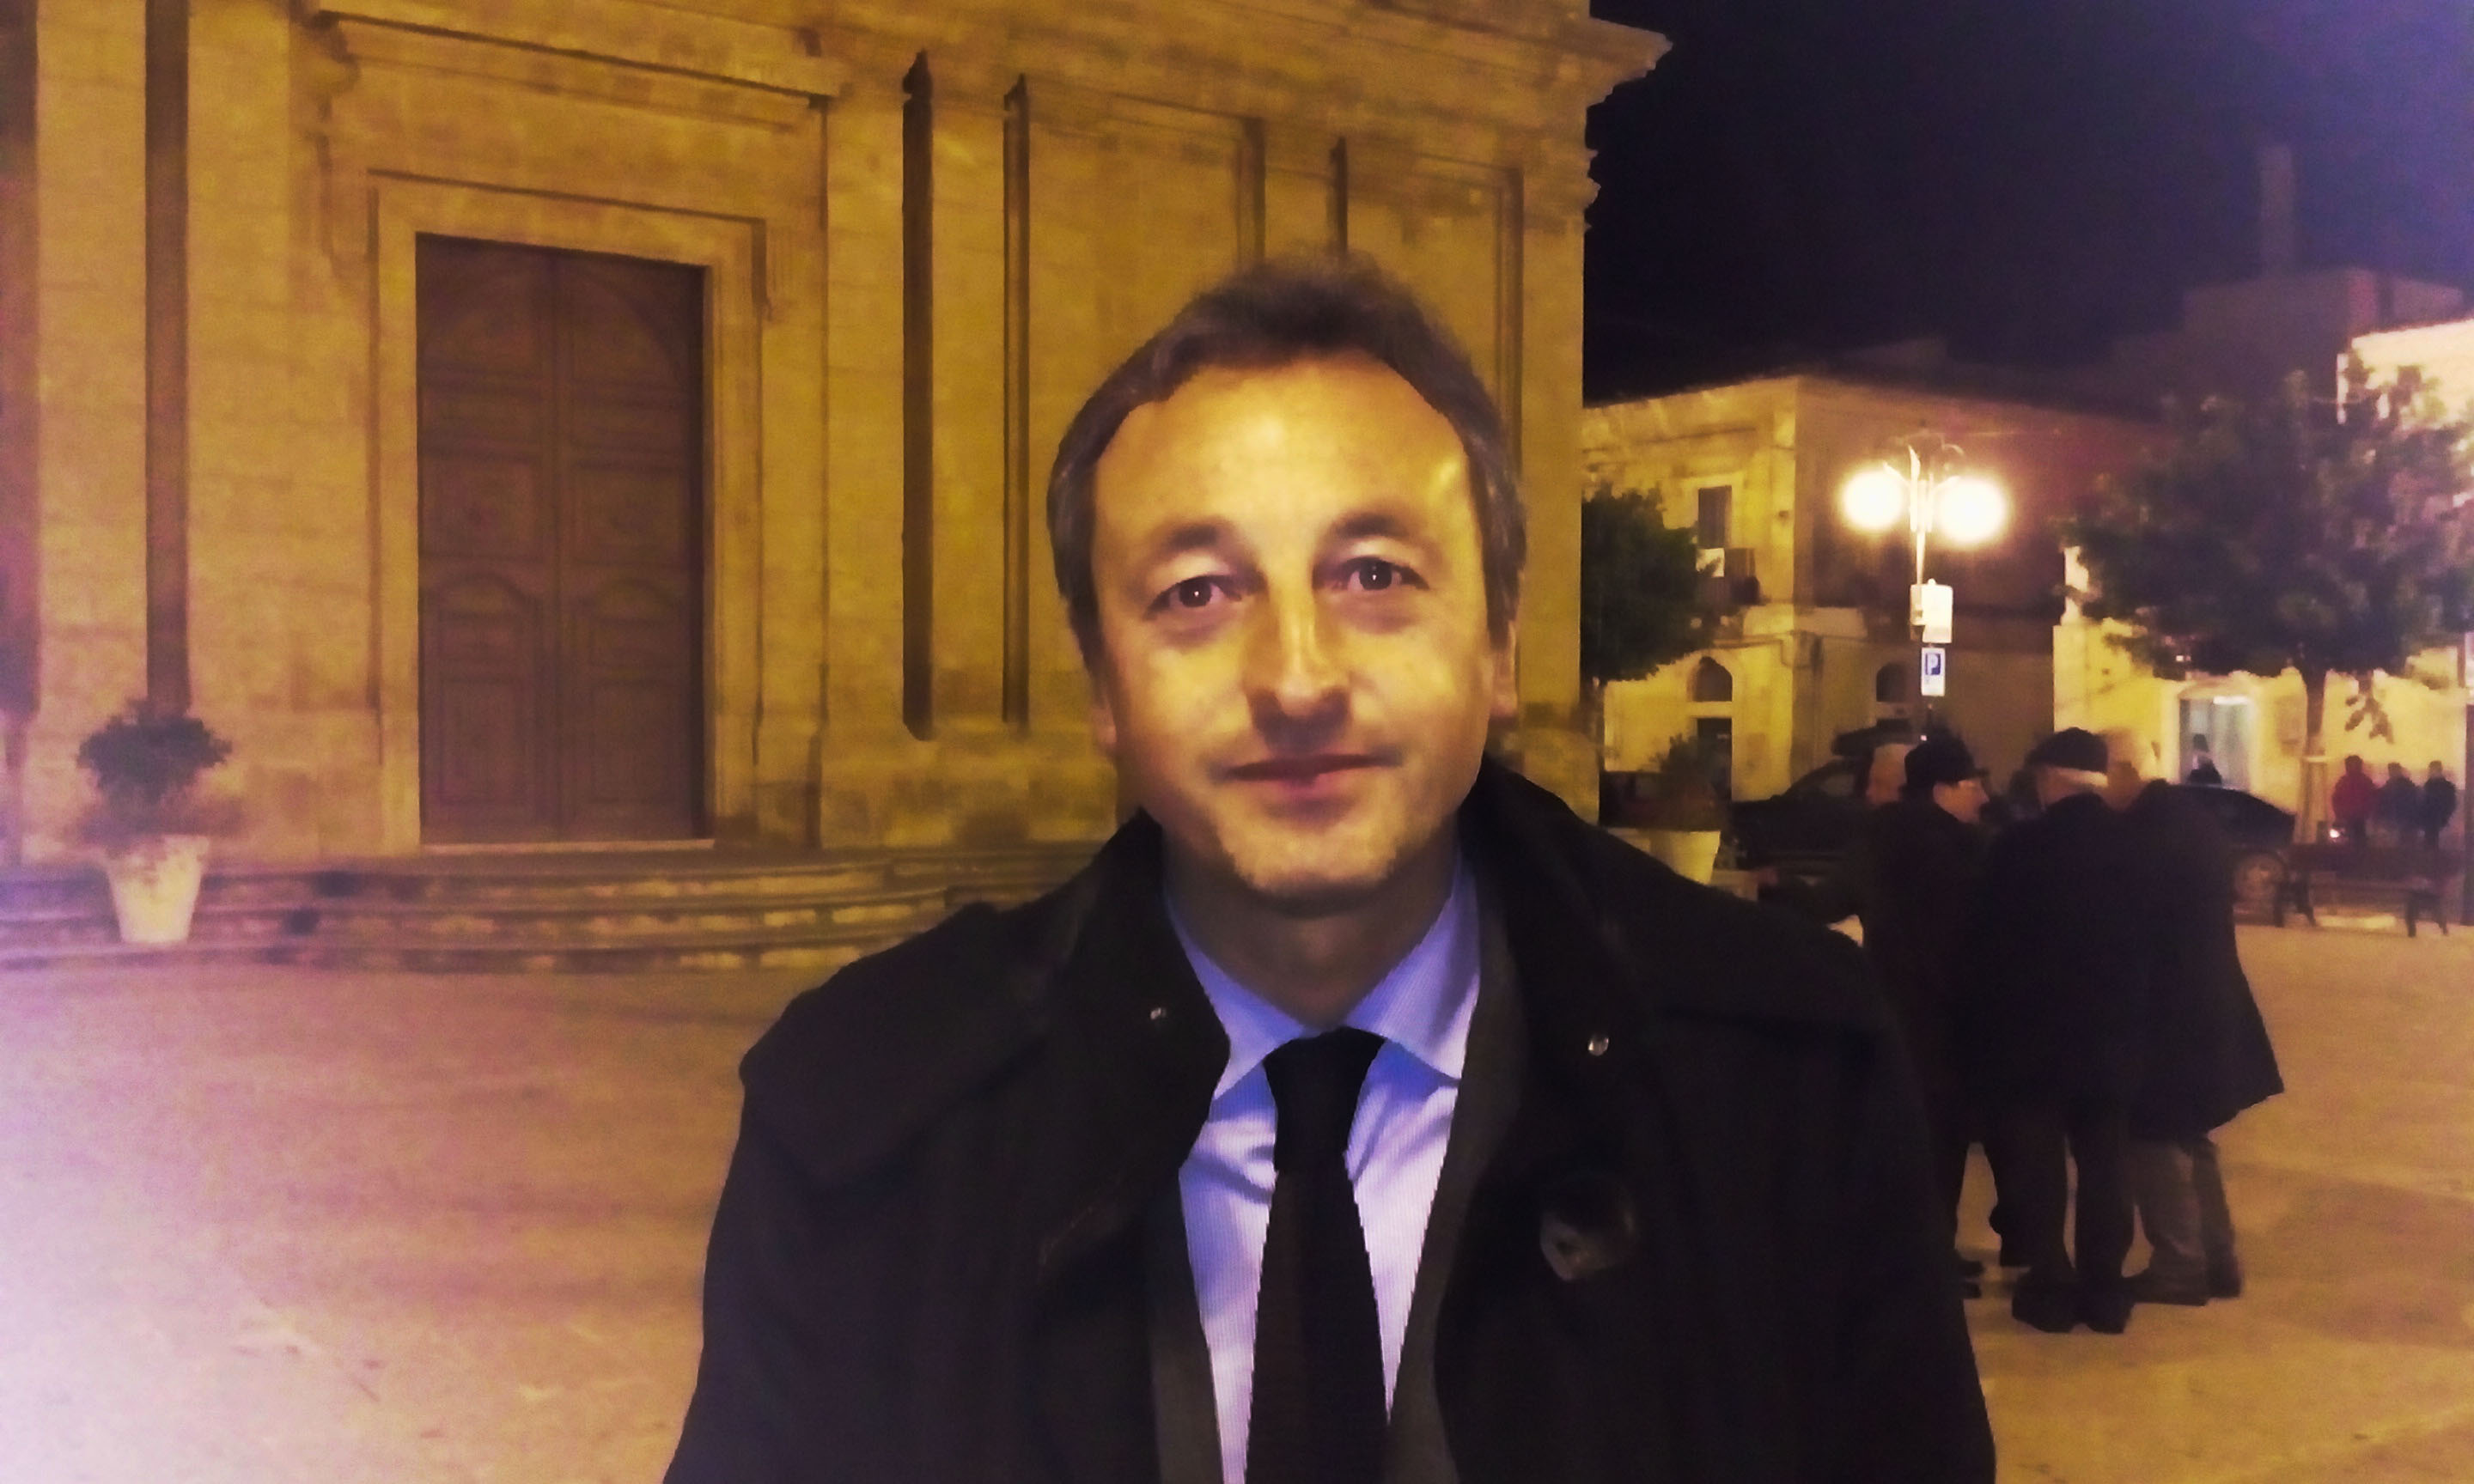  Voto di scambio con la mafia: arrestato Giuseppe Nicosia, ex sindaco di Vittoria